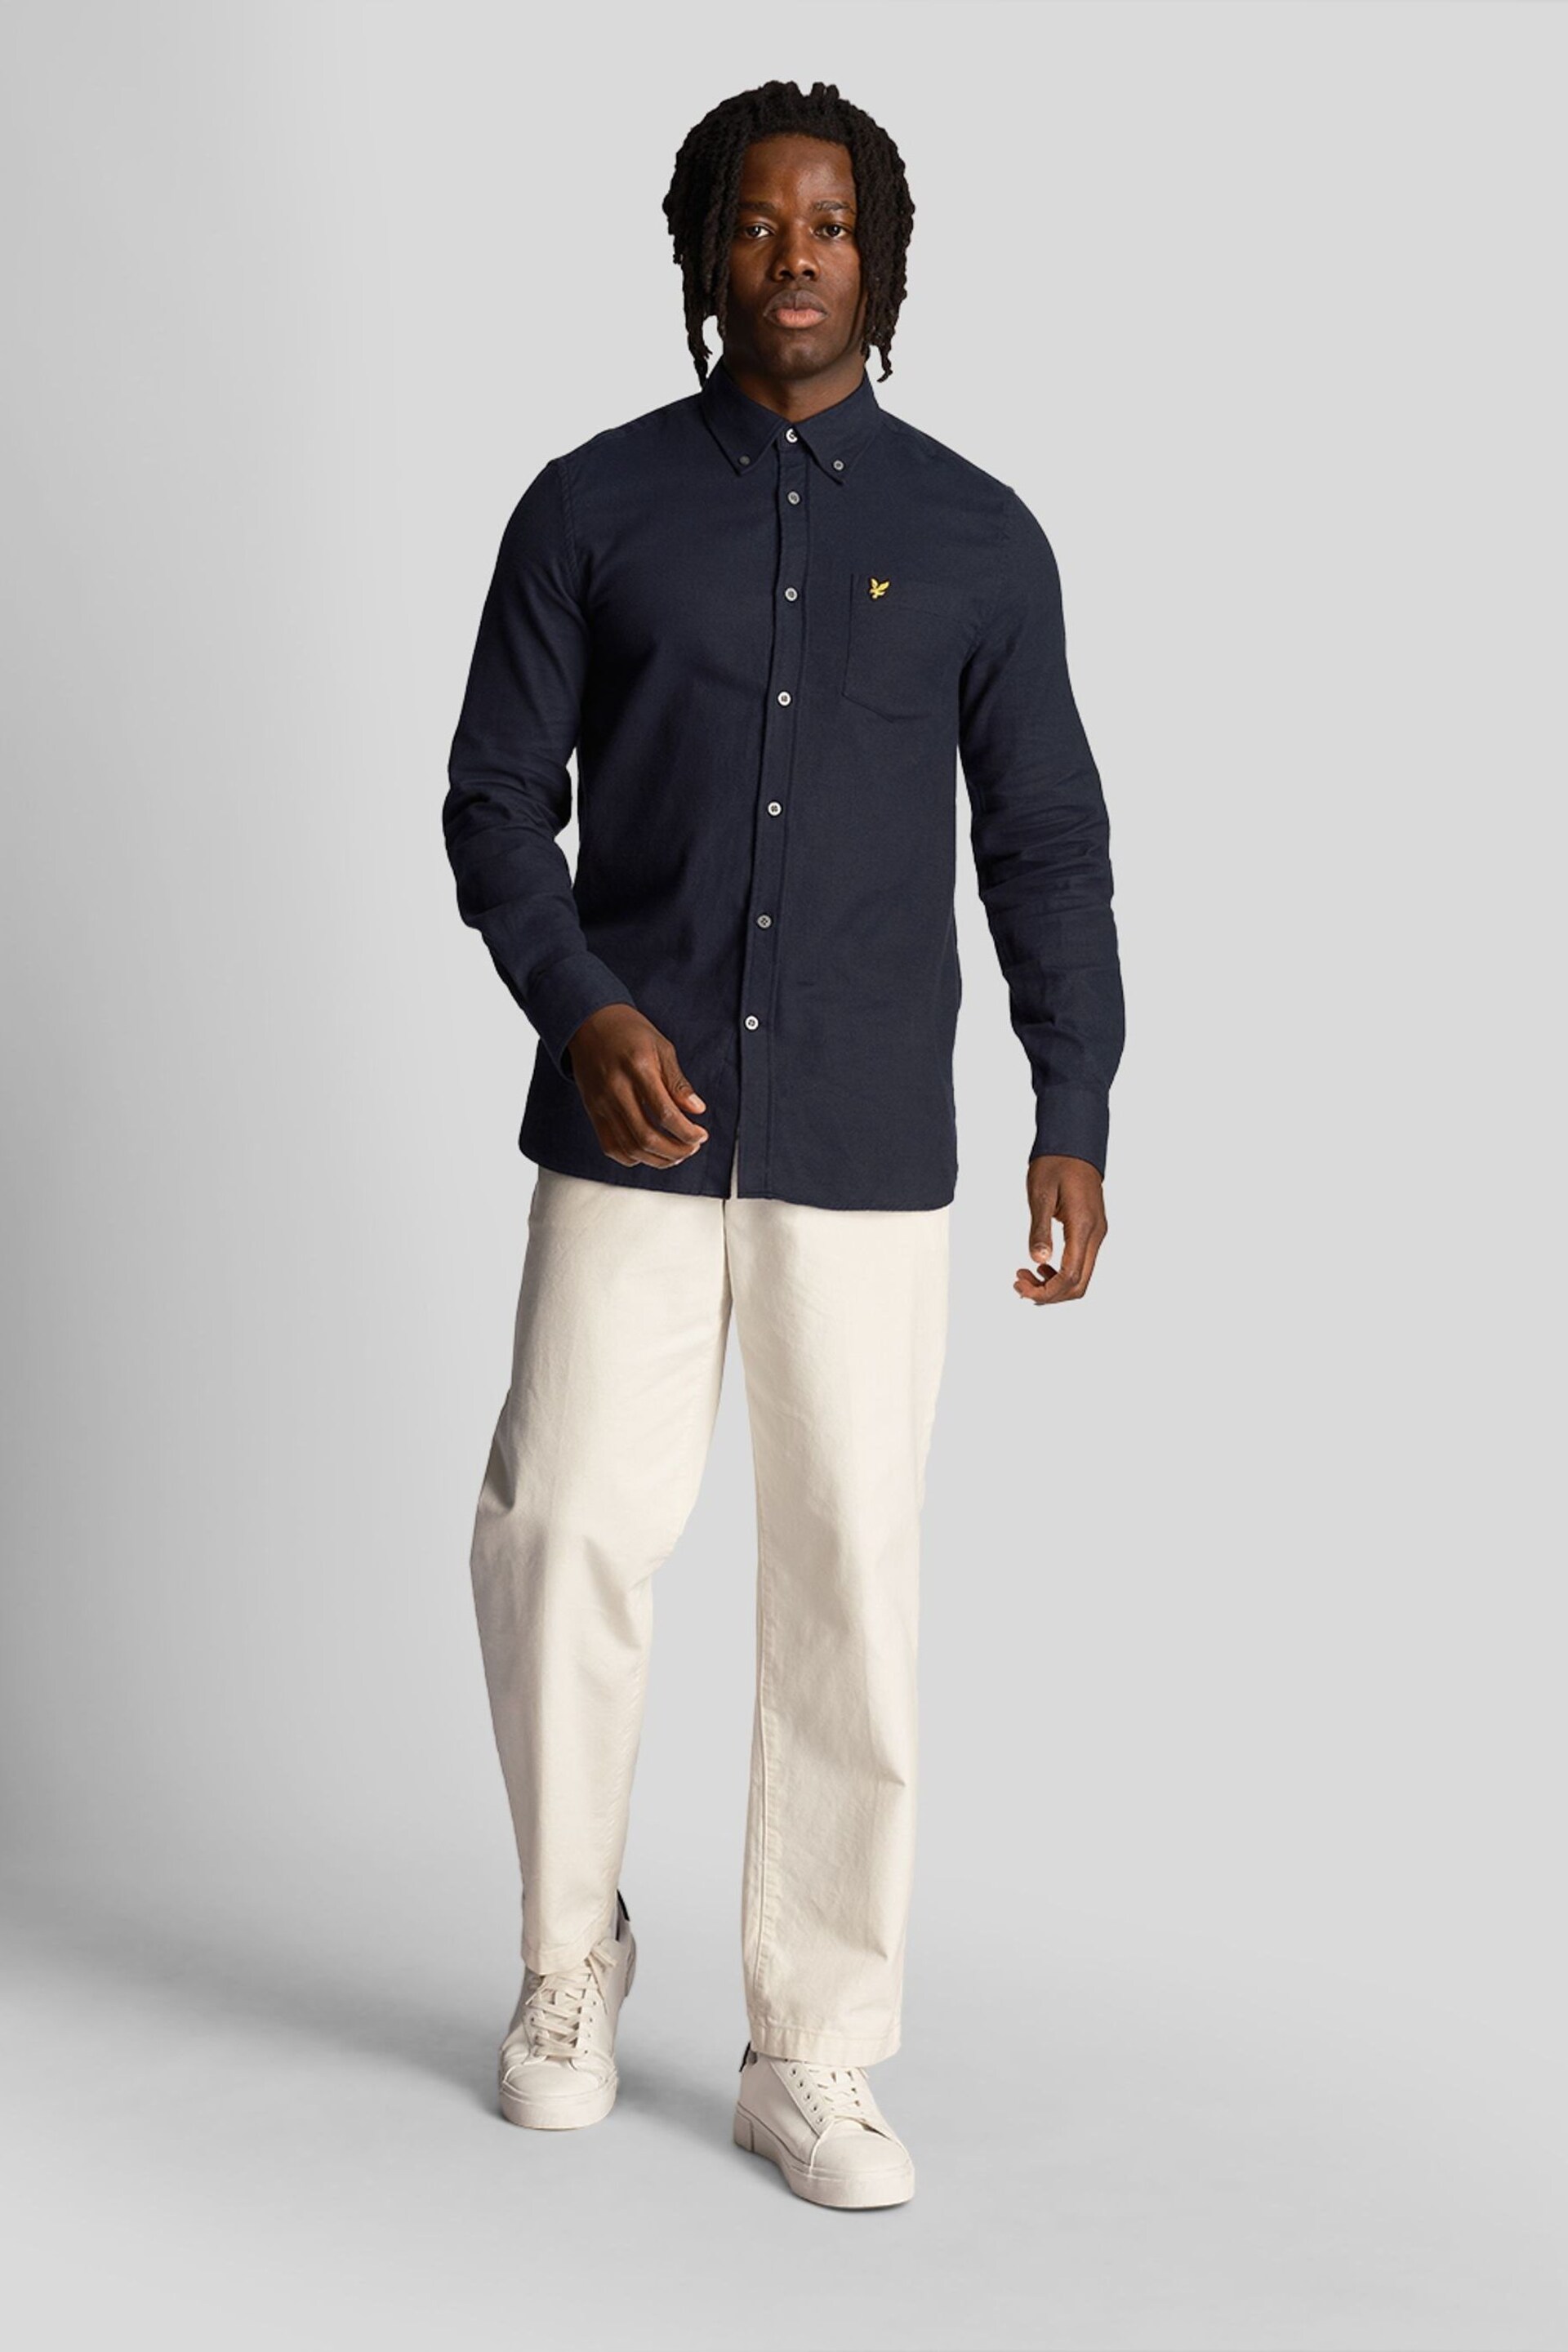 Lyle & Scott Blue Plain Flannel Shirt - Image 3 of 9